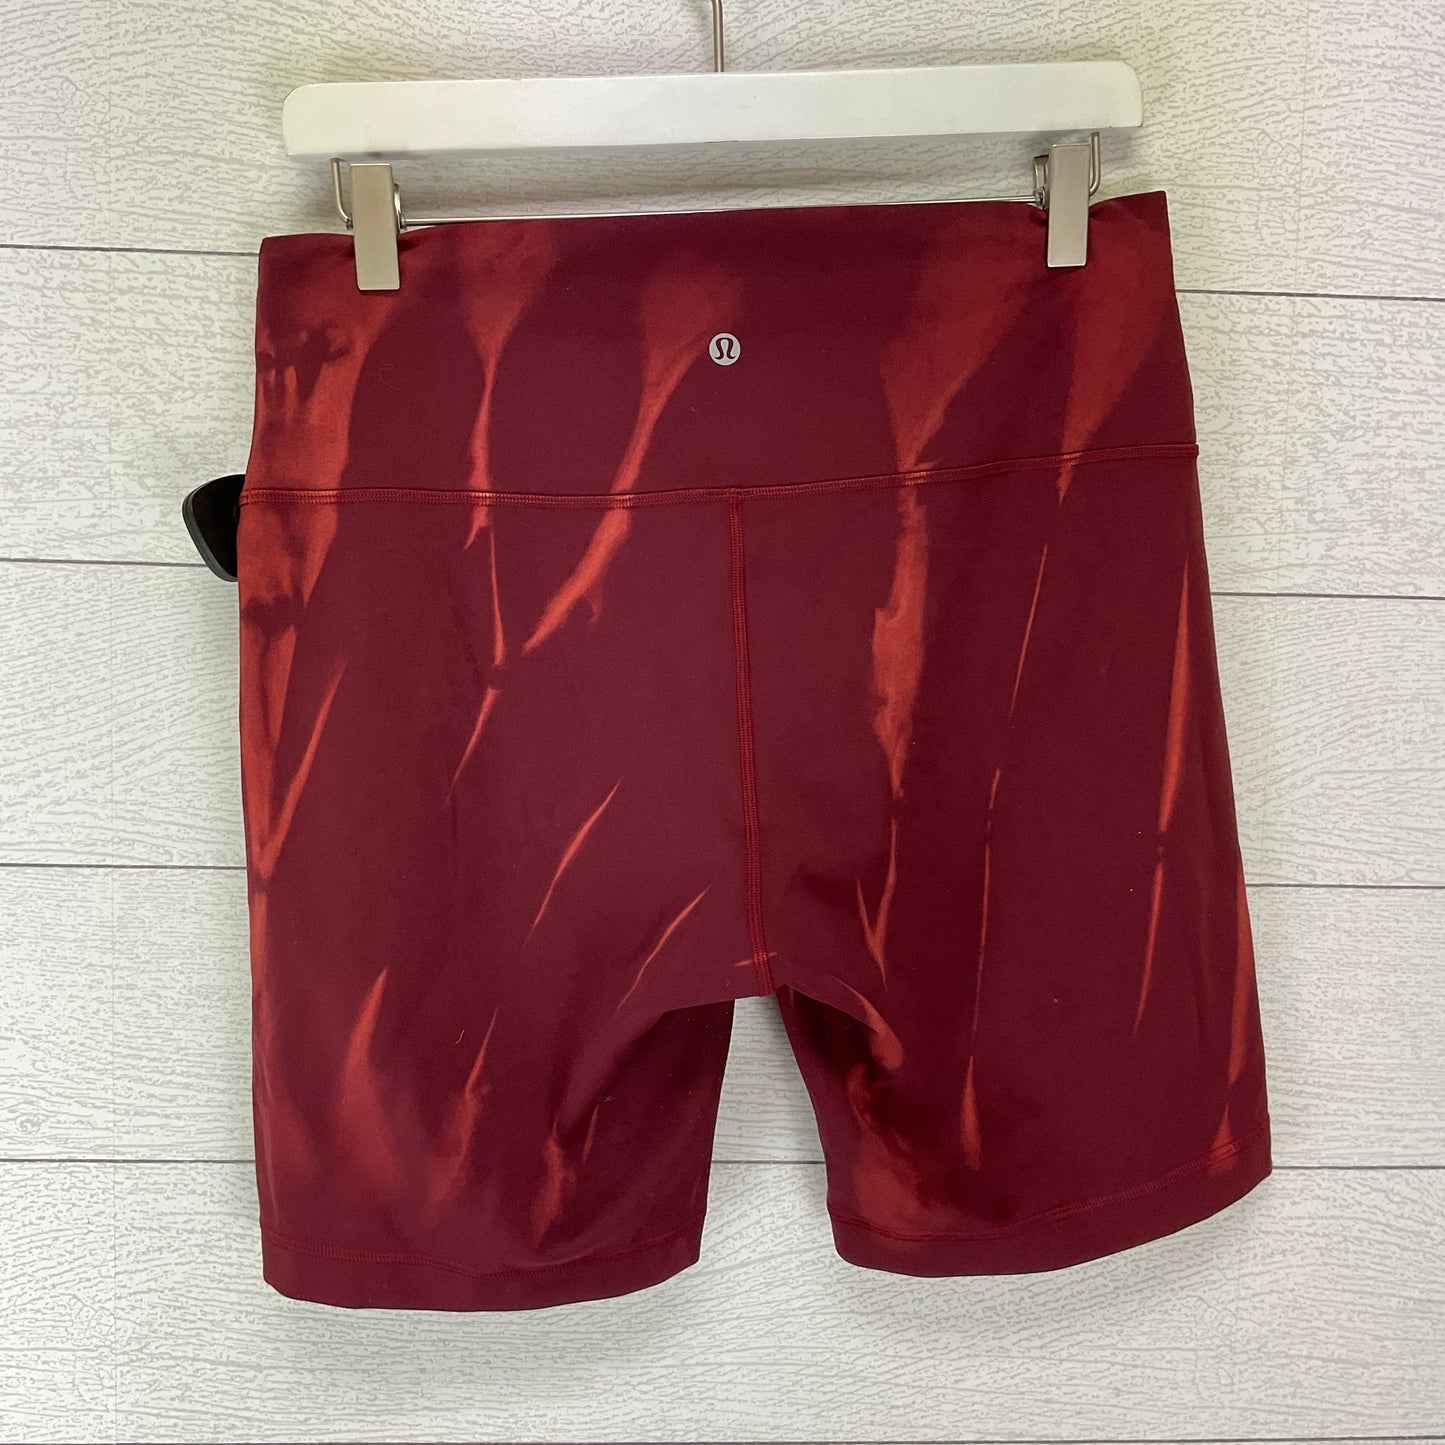 Red Athletic Shorts Lululemon, Size 12